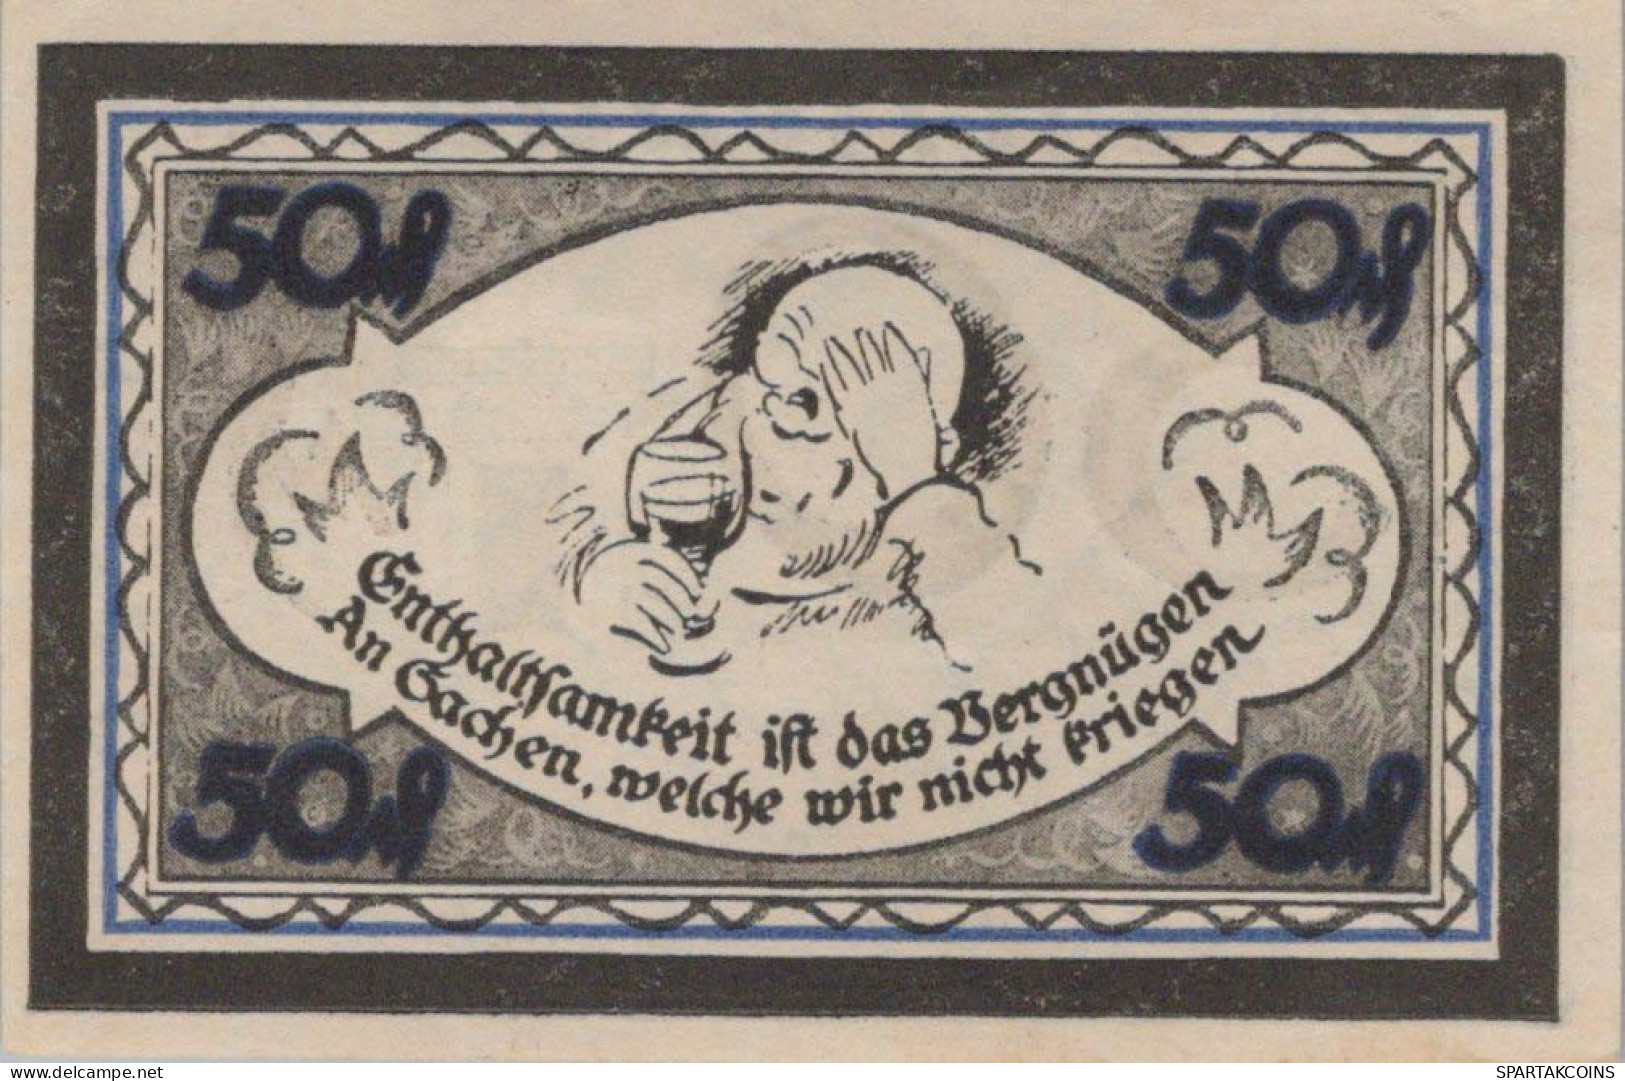 50 PFENNIG 1921 Stadt STOLZENAU Hanover DEUTSCHLAND Notgeld Banknote #PG235 - [11] Lokale Uitgaven